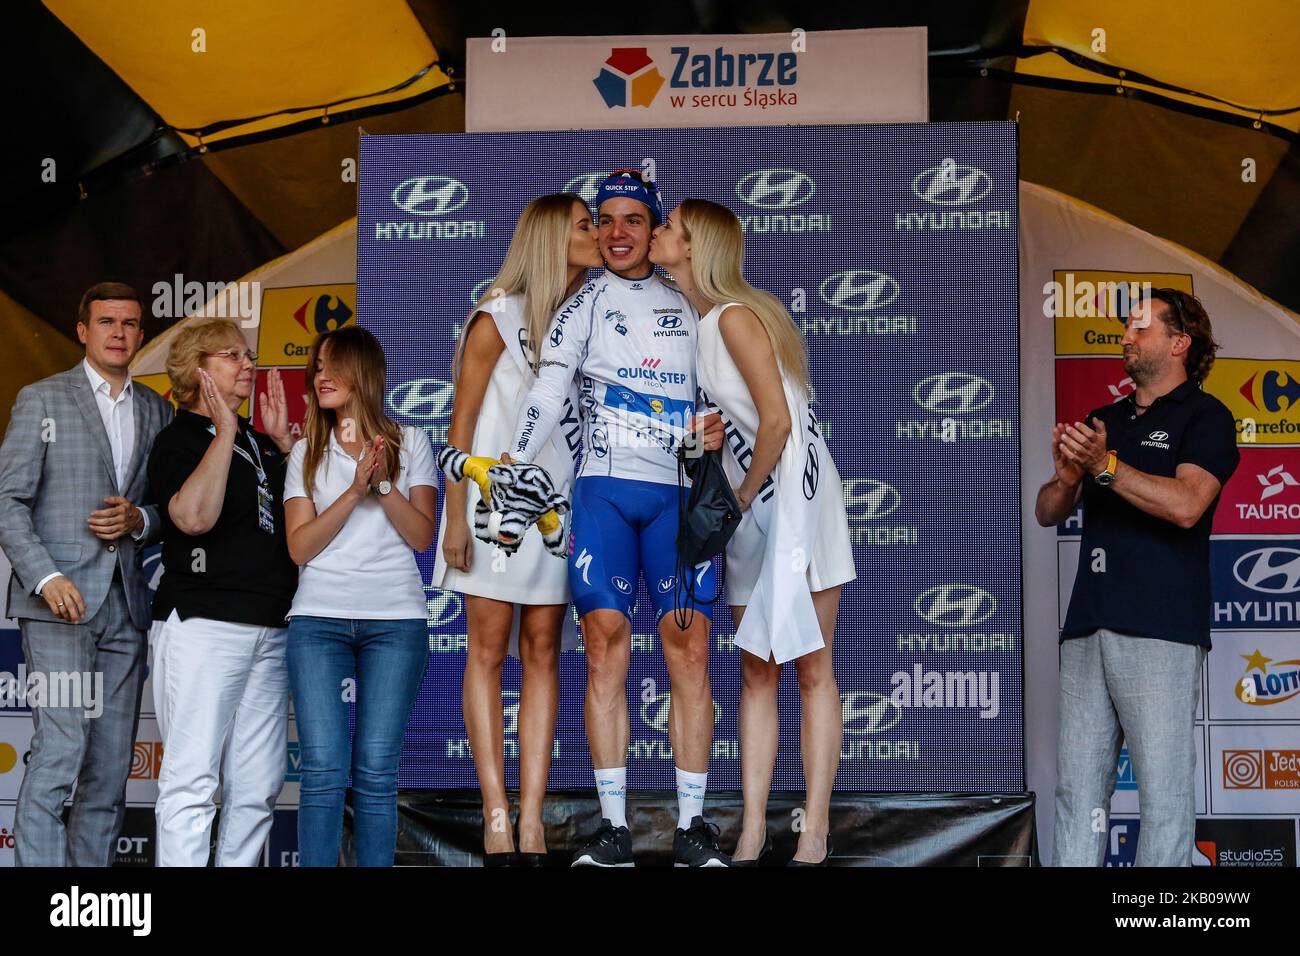 Alvaro JOSE HODEG CHAGUI recibe el premio especial Hyundai como mejor velocista durante la ceremonia de decoración después de ganar la tercera etapa del Tour de Pologne 75th, UCI World Tour en Zabrze, Polonia, el 6 de agosto de 2018. (Foto de Dominika Zarzycka/NurPhoto) Foto de stock